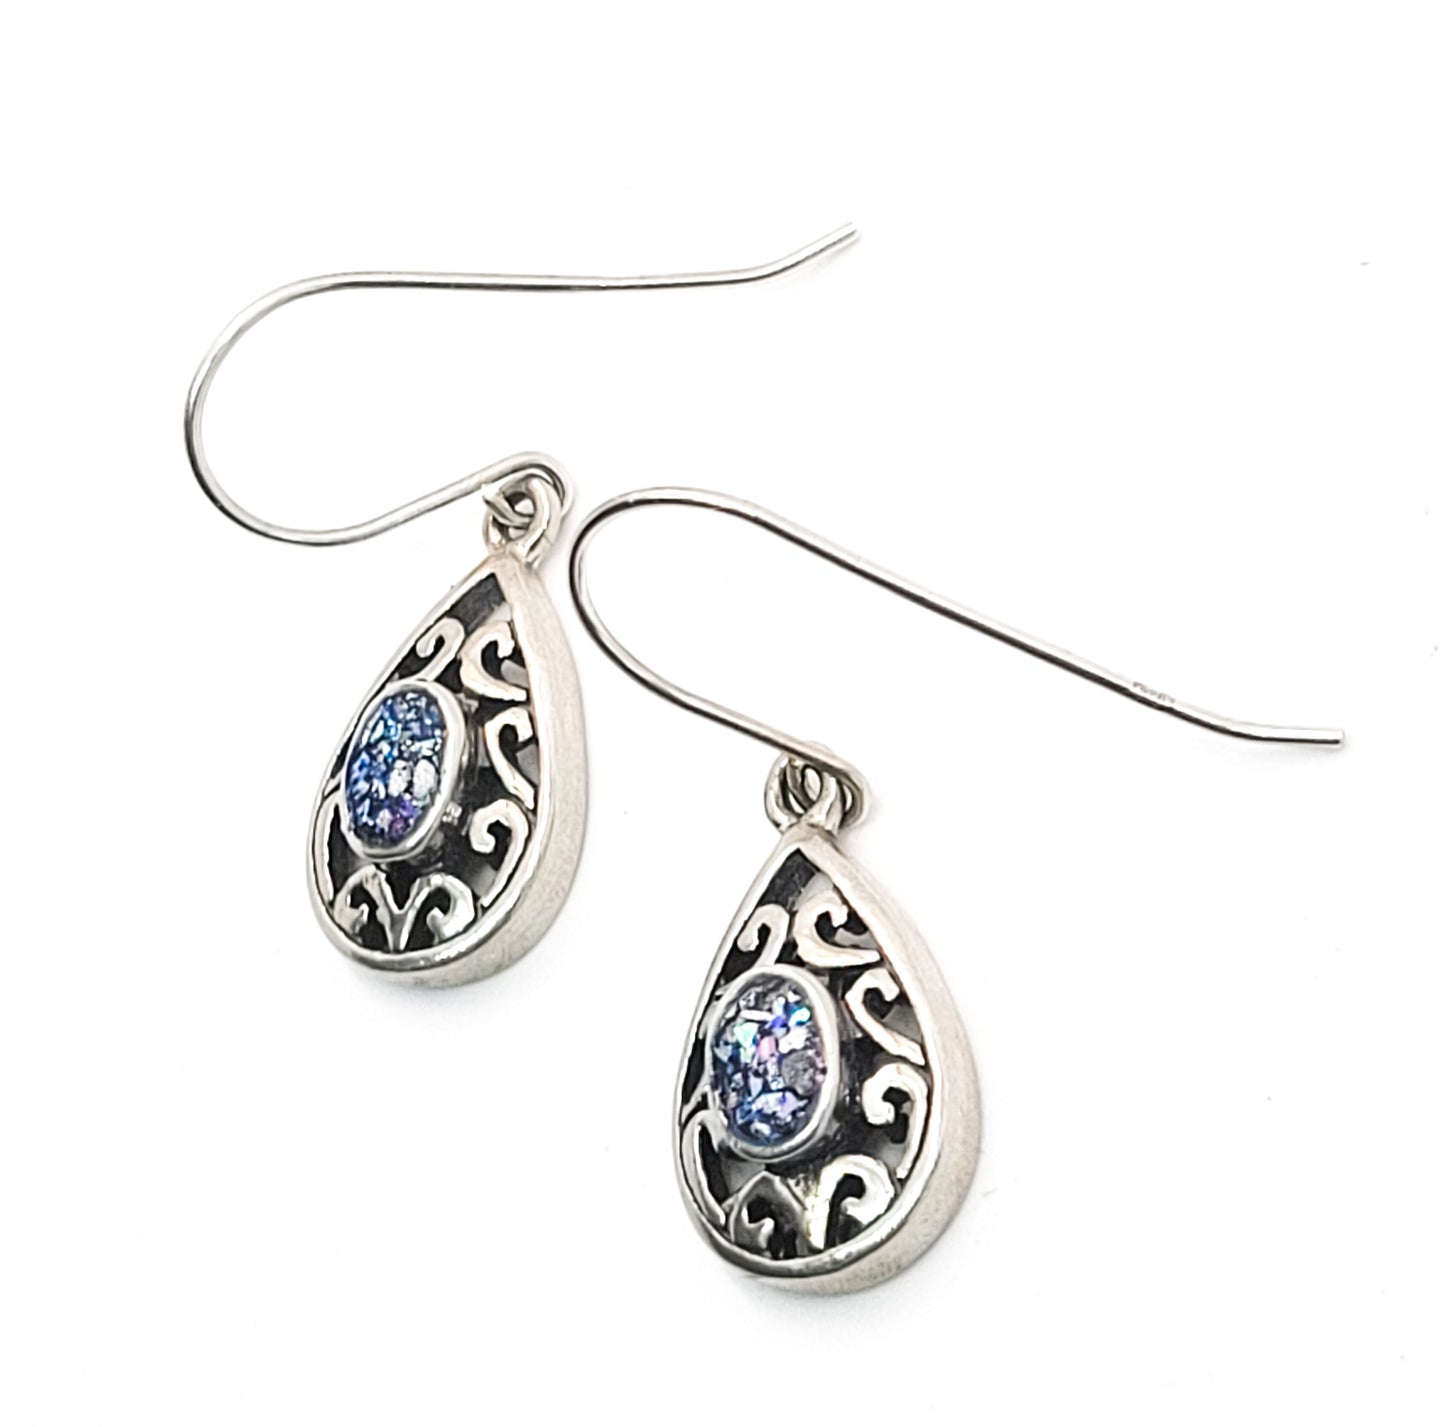 Blue glass mosaic tribal Balinese style open work drop sterling silver earrings